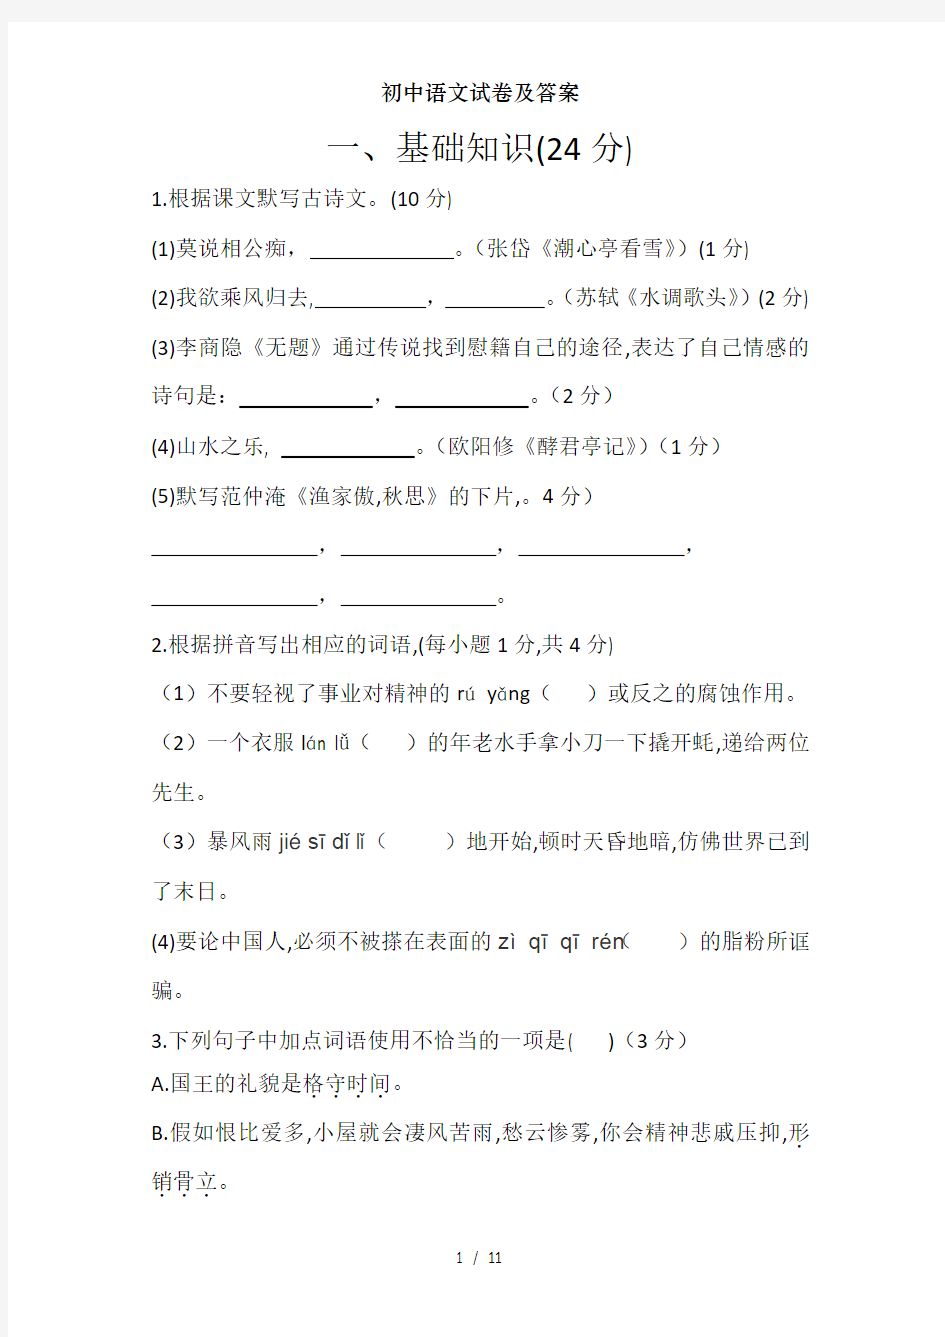 初中语文试卷及复习资料